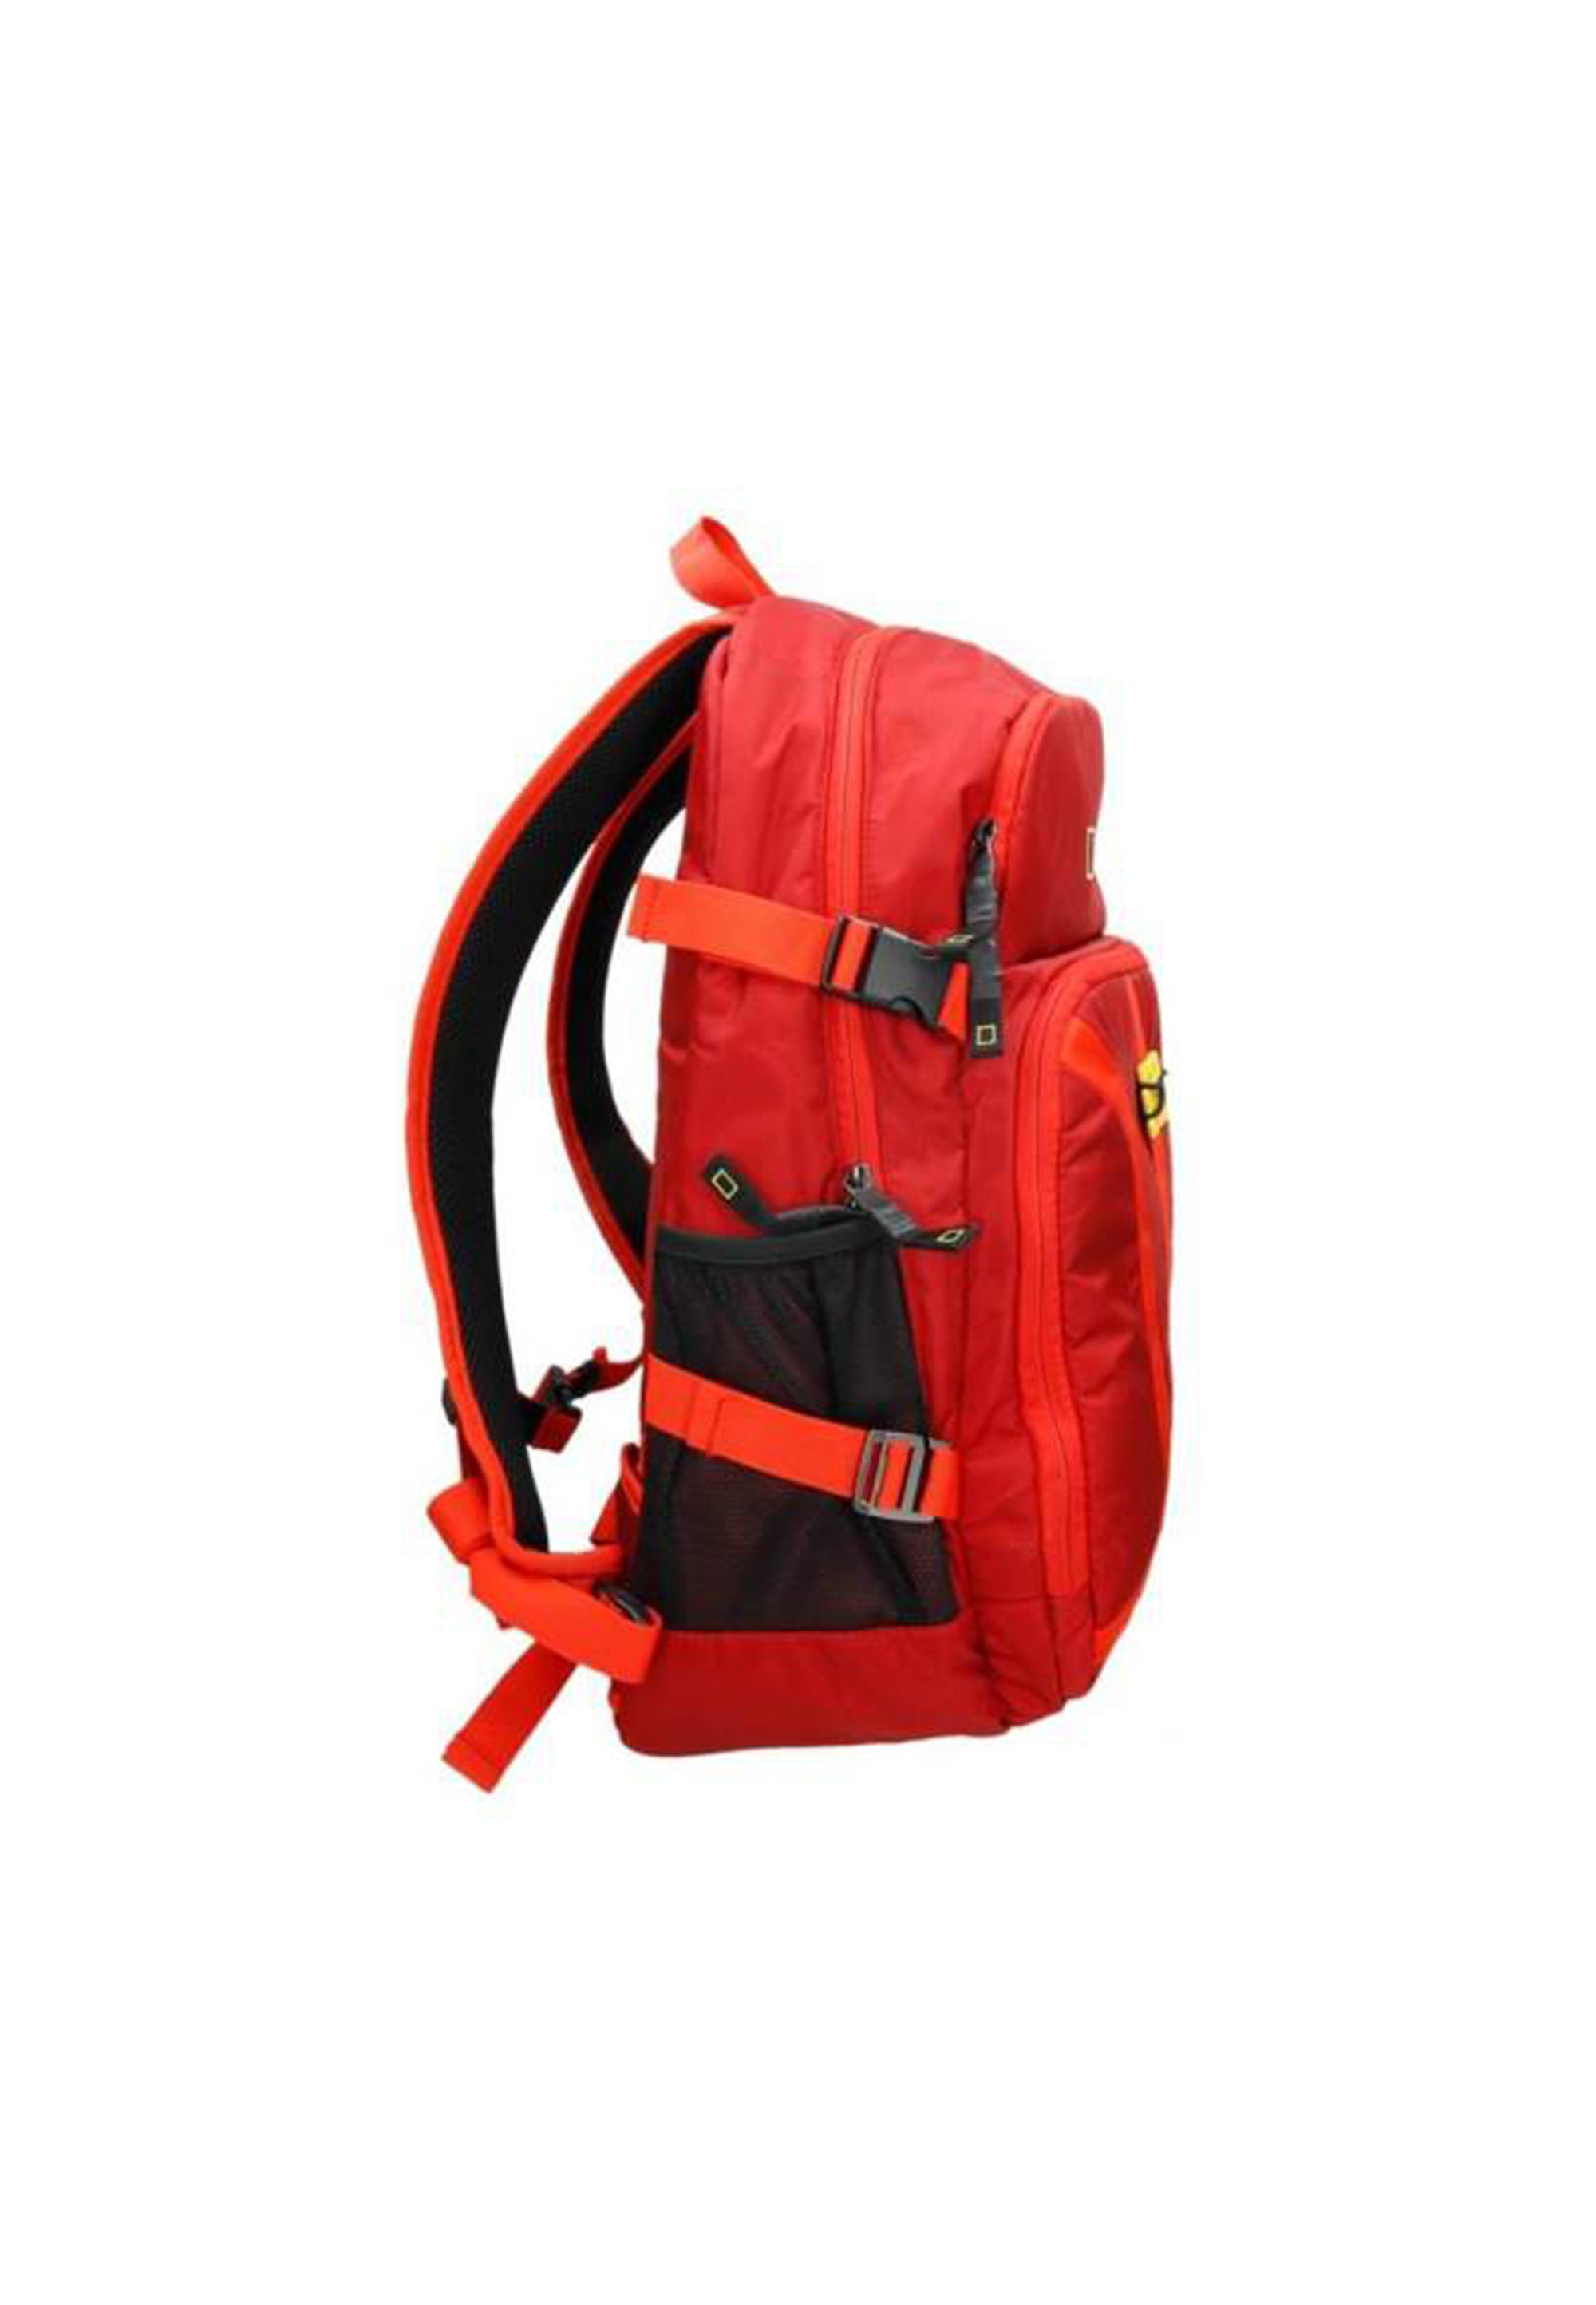 National Geographic - Discover | Freizeit Rucksack mit 2 Seitentaschen | Rot